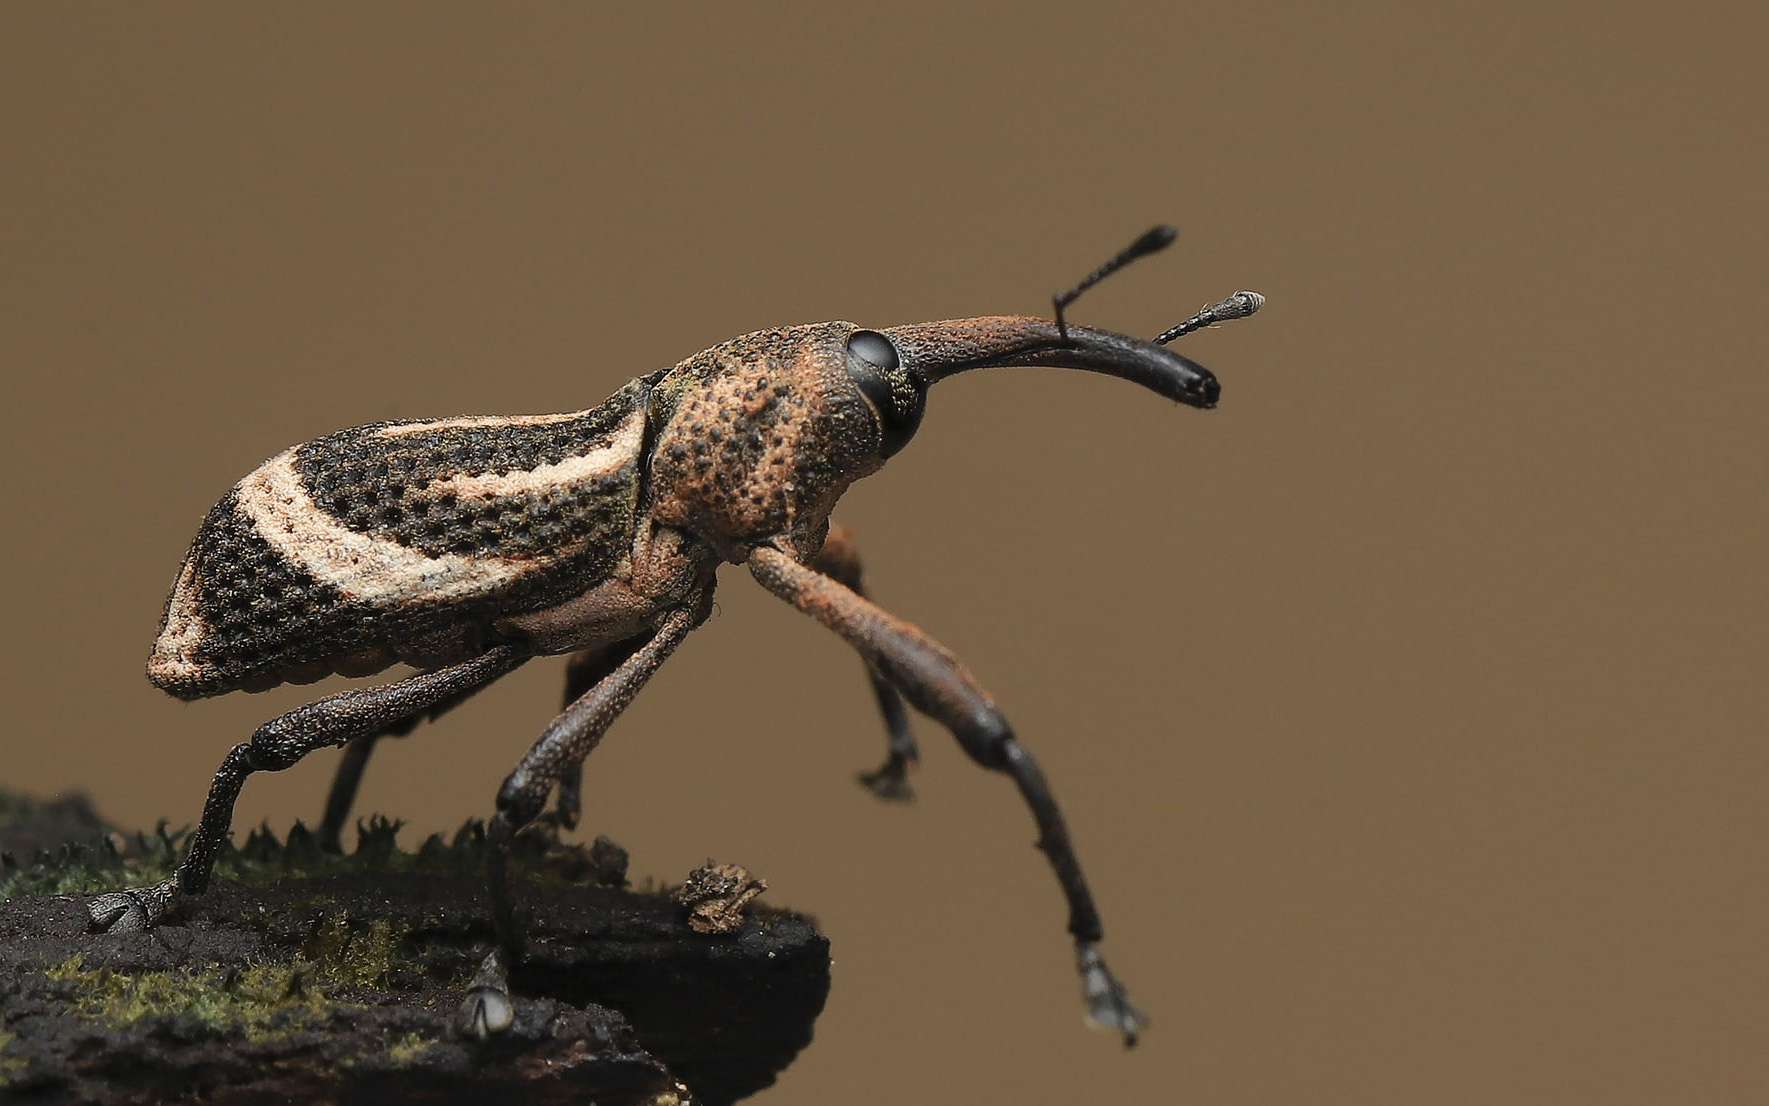 Insecta : les insectes sont en voie de disparition et cela aura des conséquences dramatiques